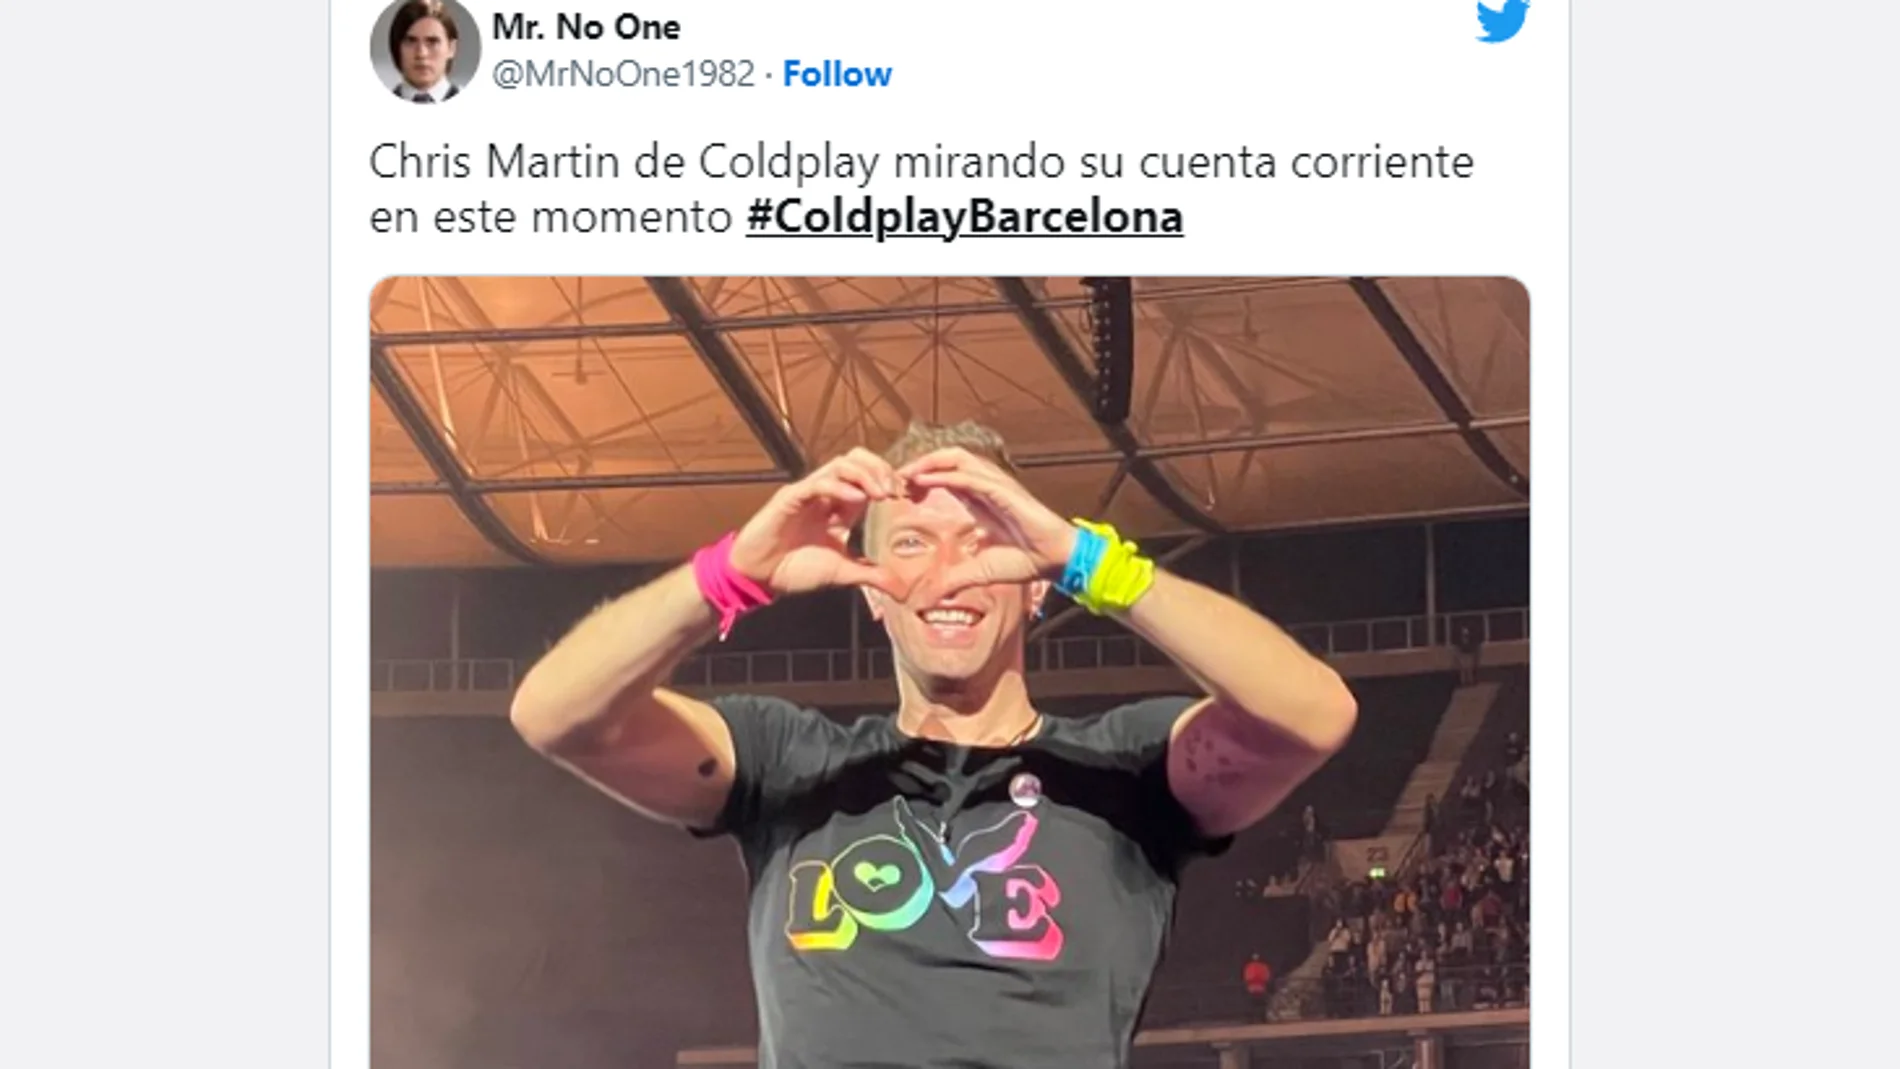 Lluvia de memes por las interminables colas virtuales para Coldplay